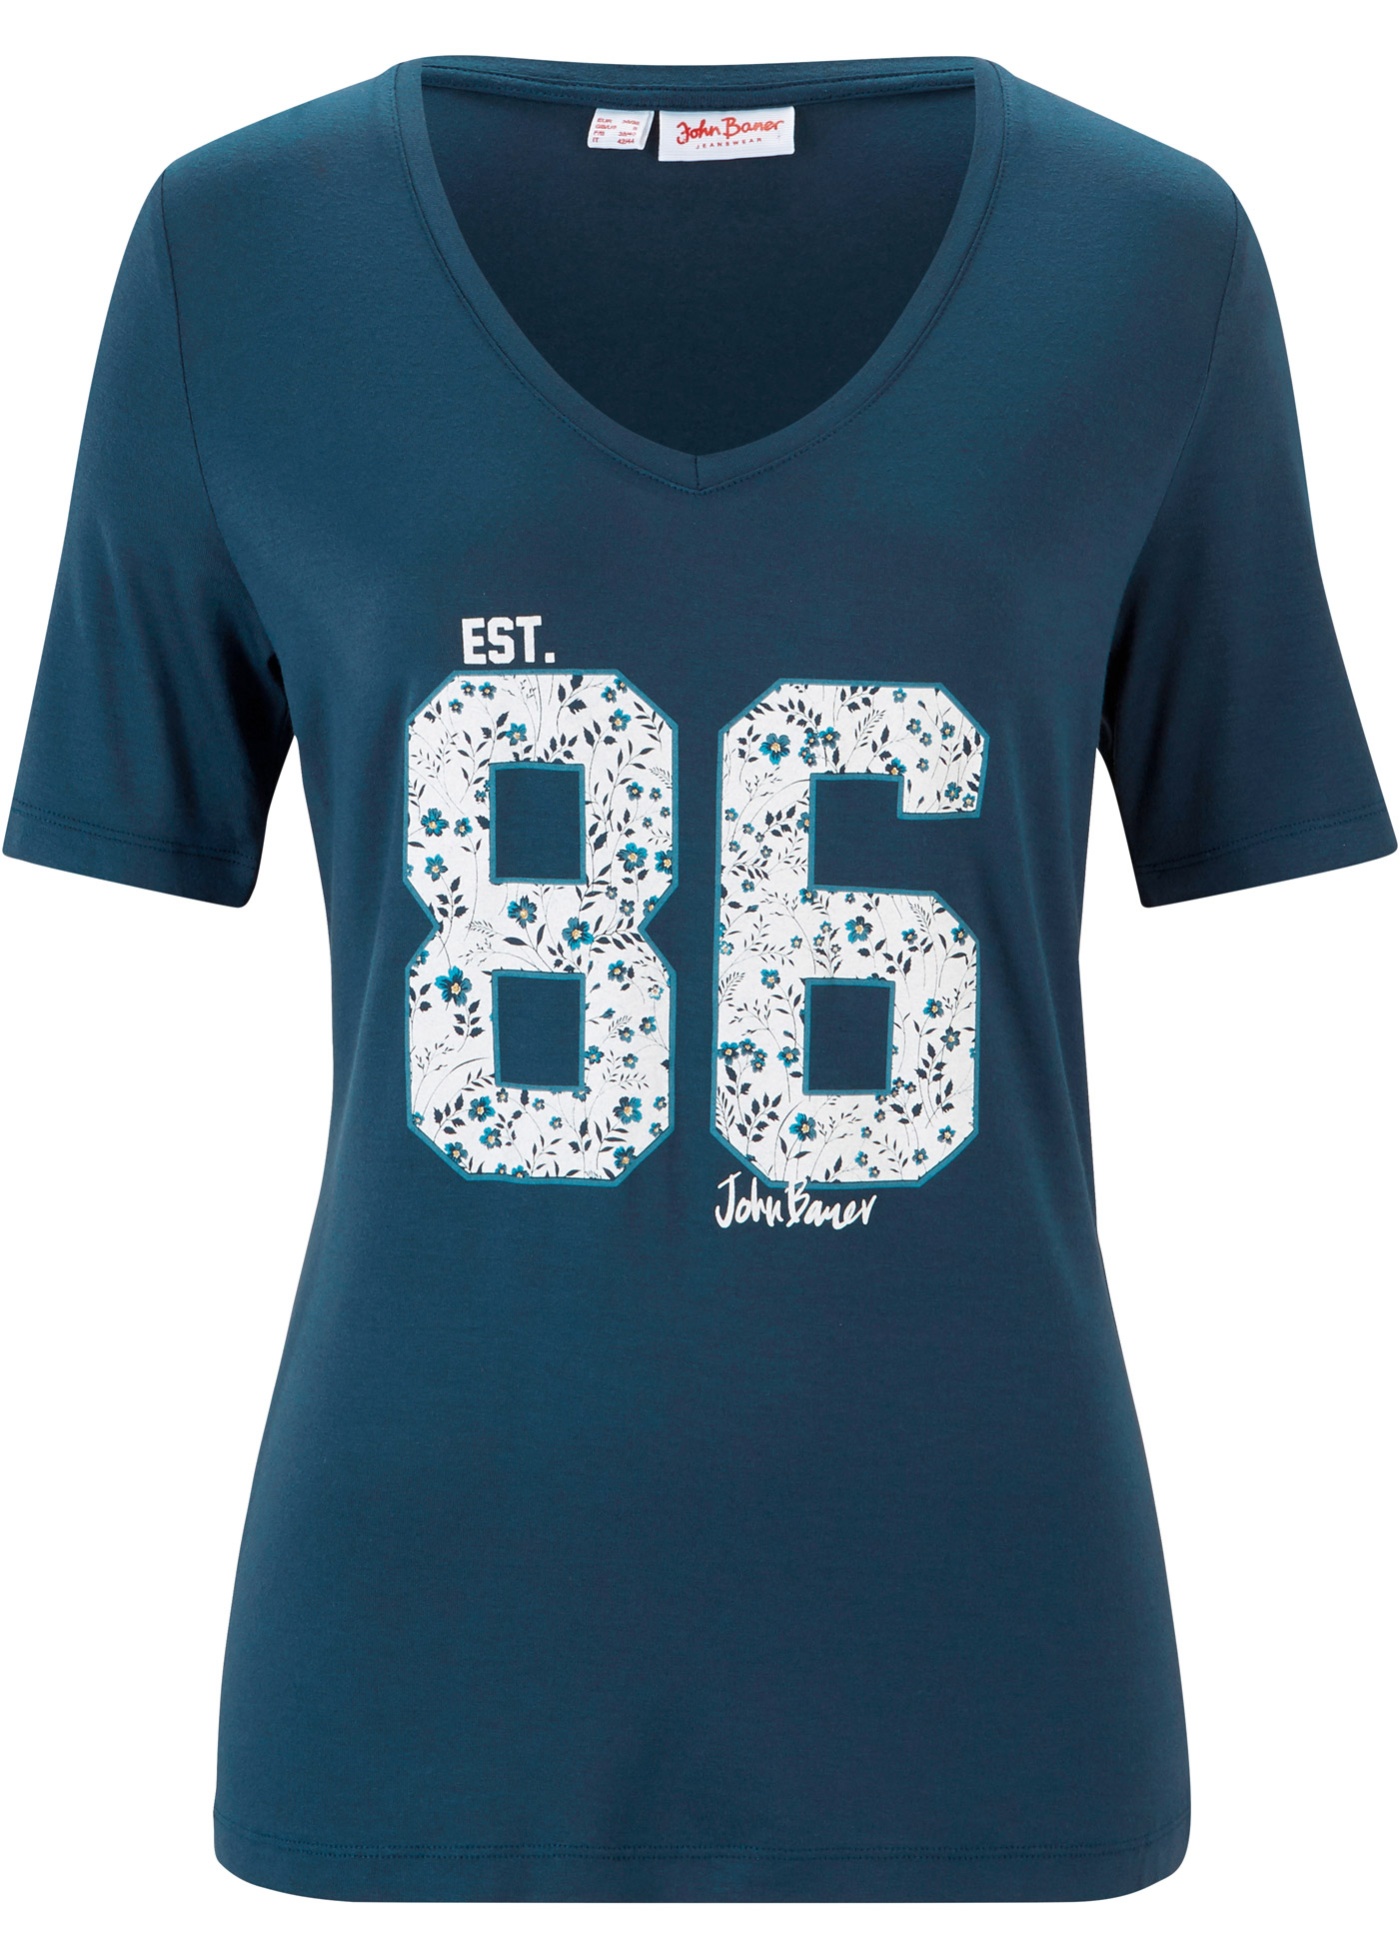 Sportliches T-Shirt, mit Druck (91815695) in dunkelblau bedruckt